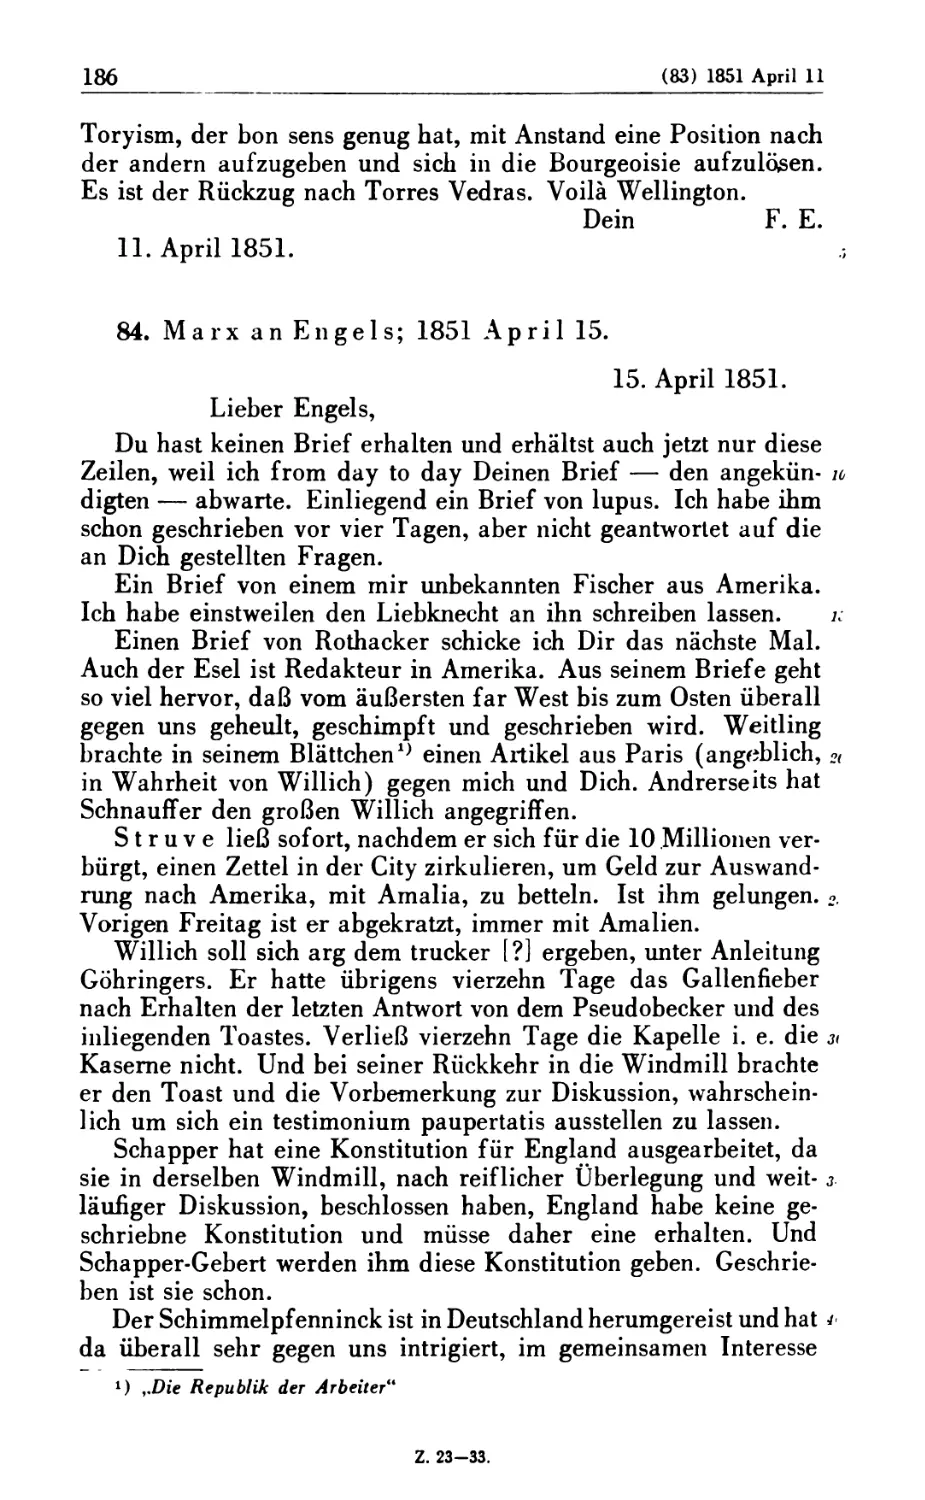 84. Marx an Engels: 1851 April 15